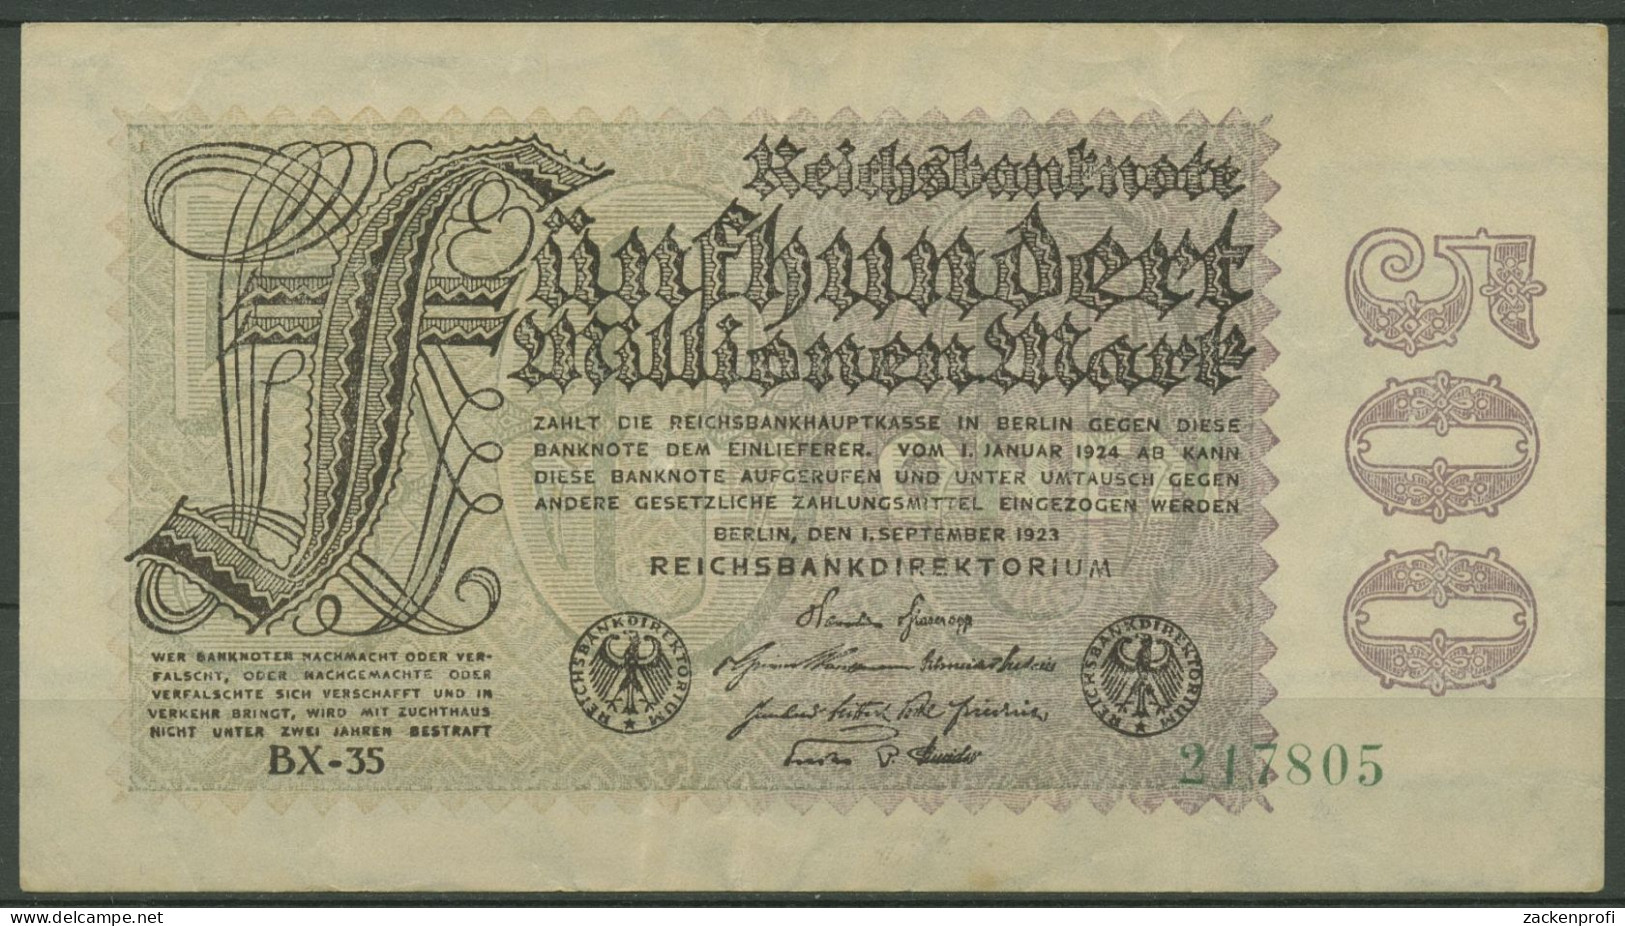 Dt. Reich 500 Millionen Mark 1923, DEU-125h FZ BX, Gebraucht (K1164) - 500 Miljoen Mark